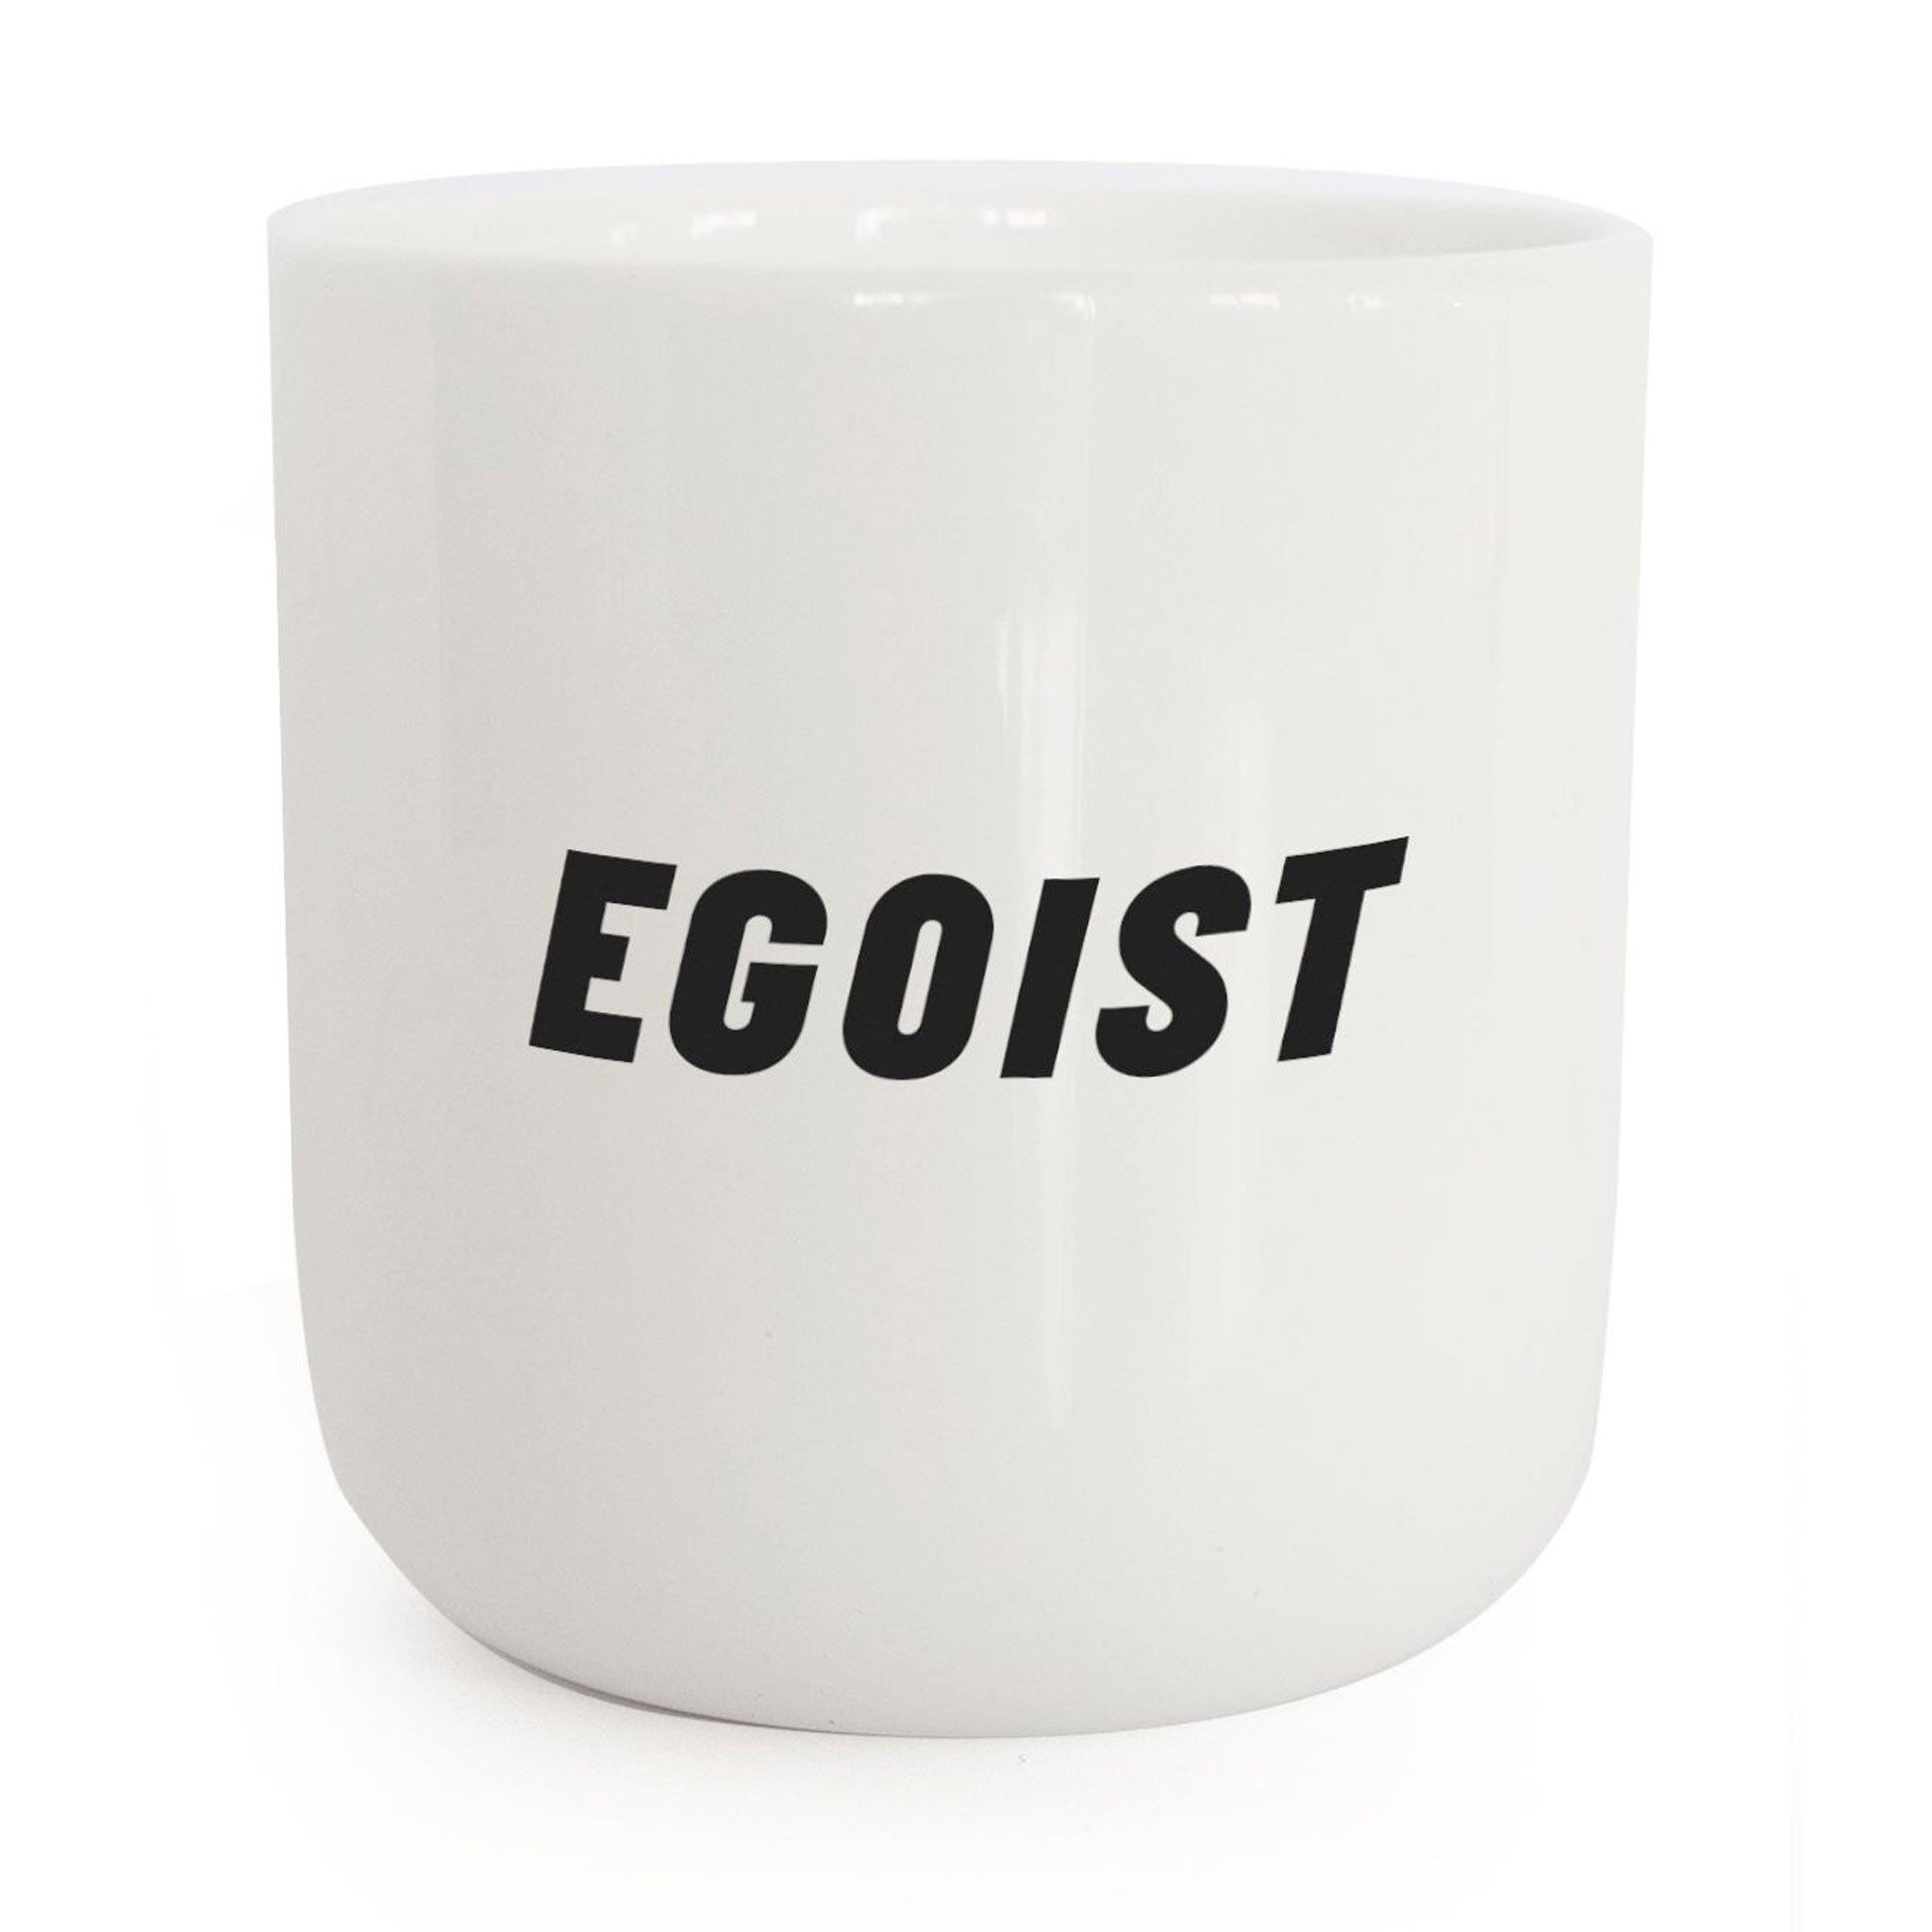 EGOIST | weisser Kaffee- & Tee-BECHER mit schwarzer Typo | Attitude Serie | PLTY